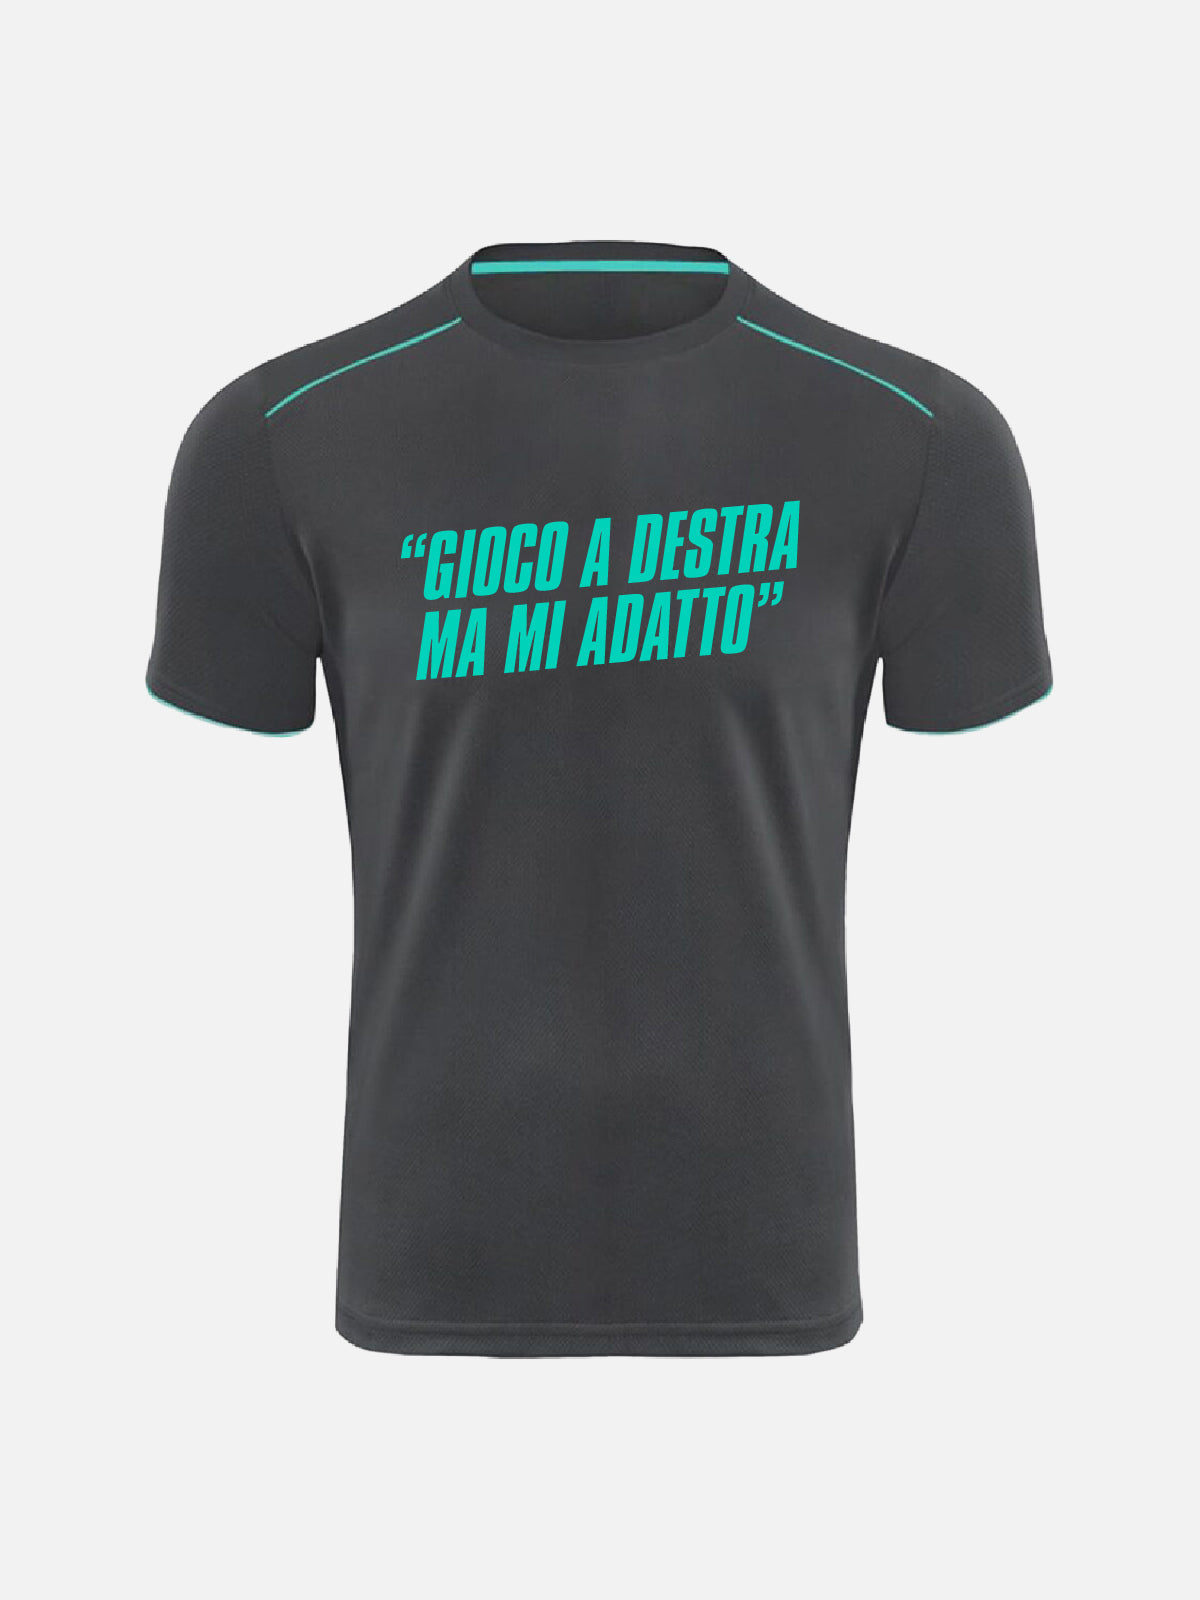 T-shirt - "Gioco A Destra Ma Mi Adatto"